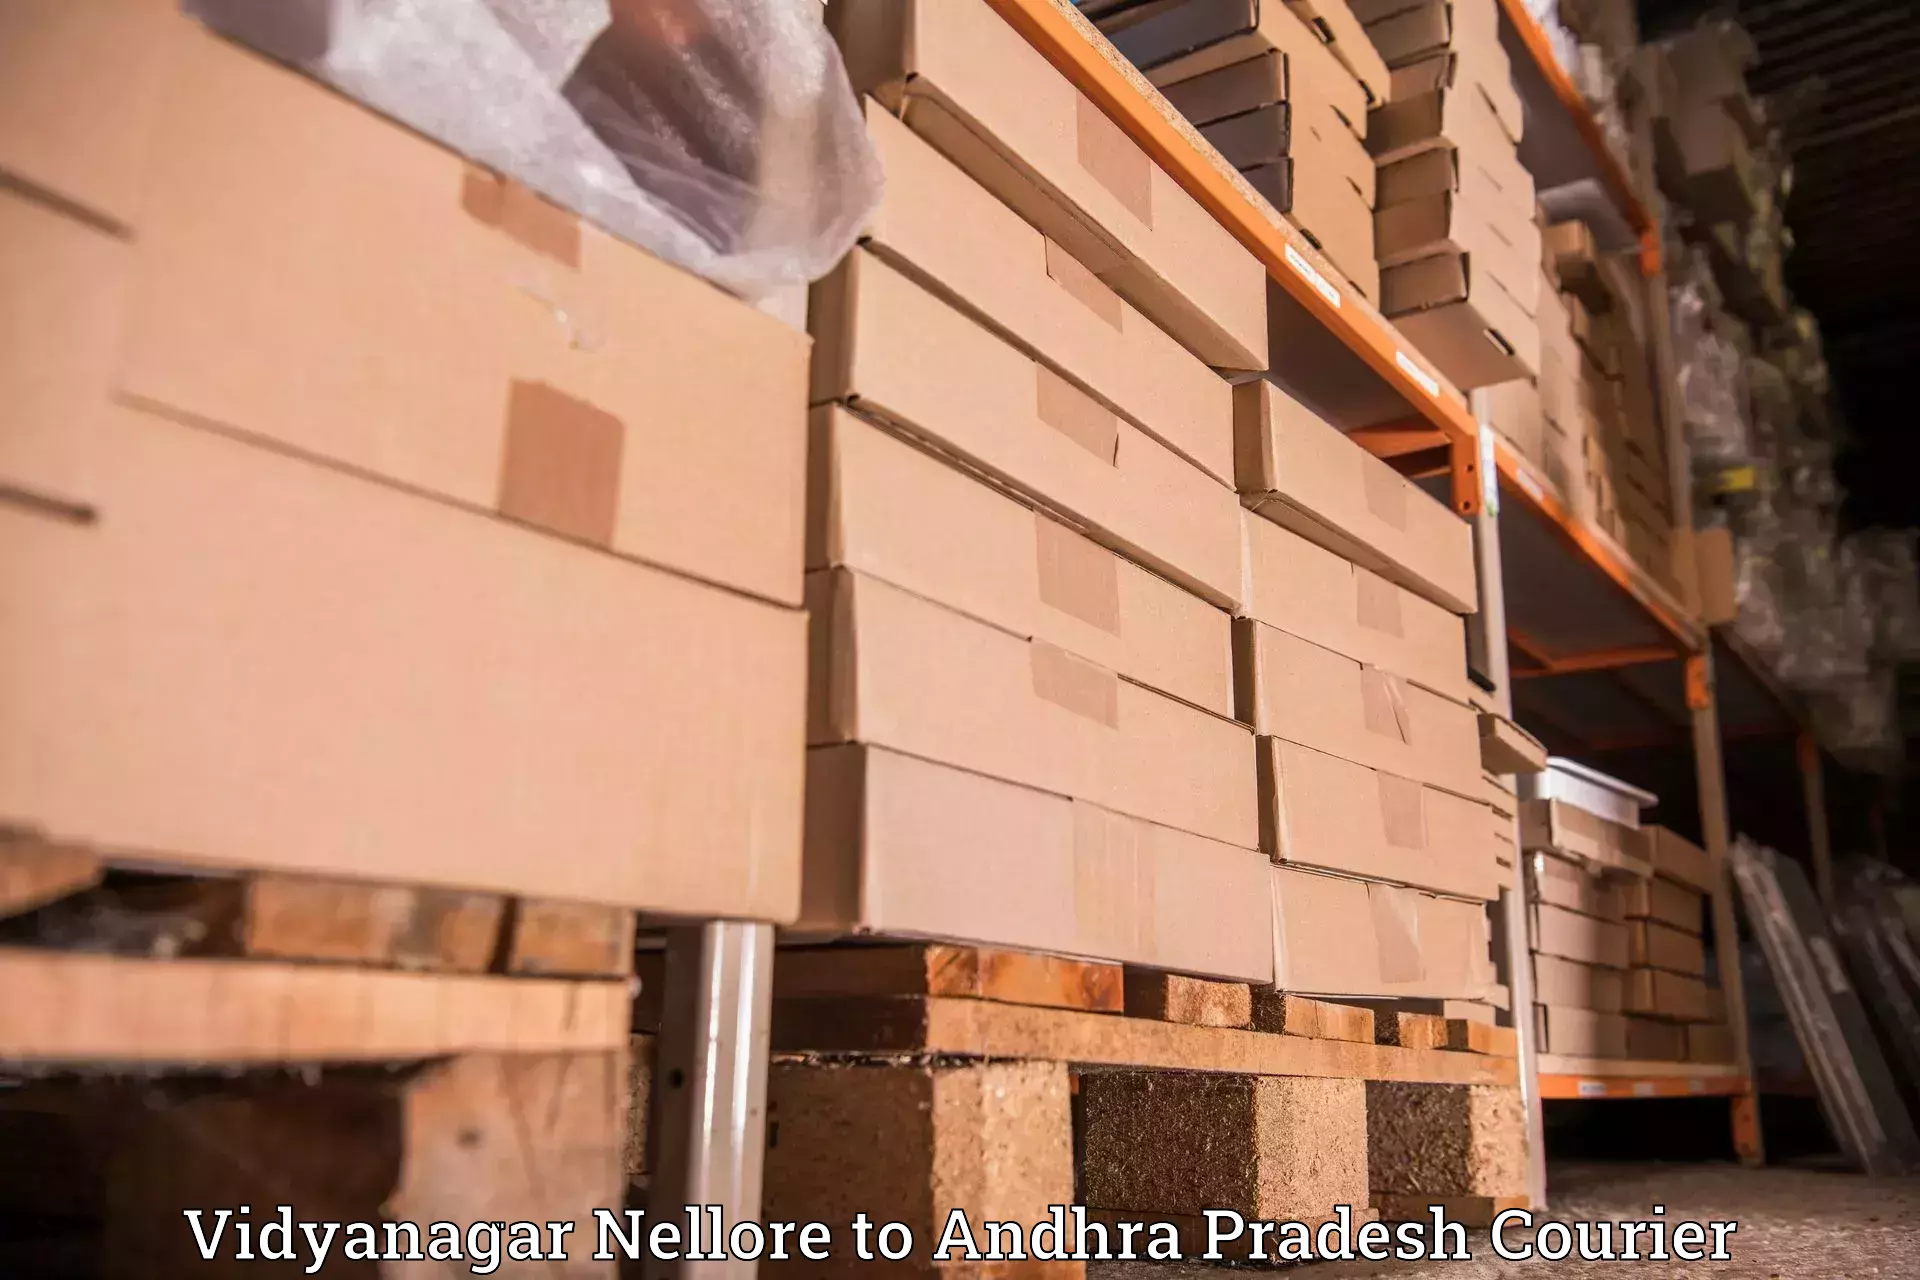 Special handling courier Vidyanagar Nellore to Devarapalli